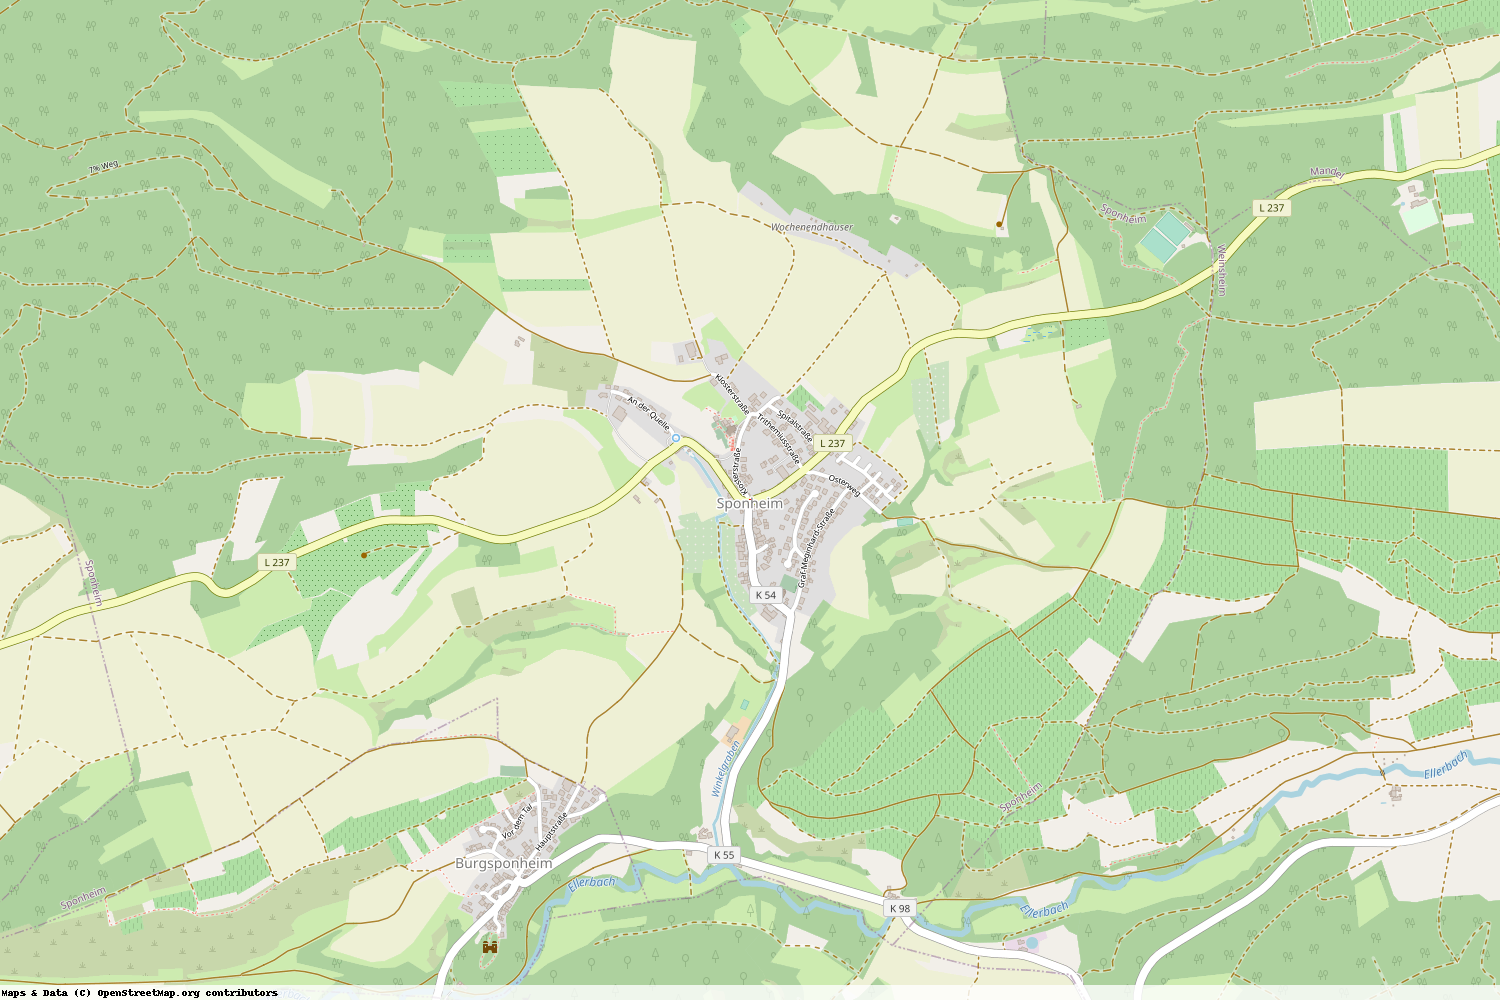 Ist gerade Stromausfall in Rheinland-Pfalz - Bad Kreuznach - Sponheim?